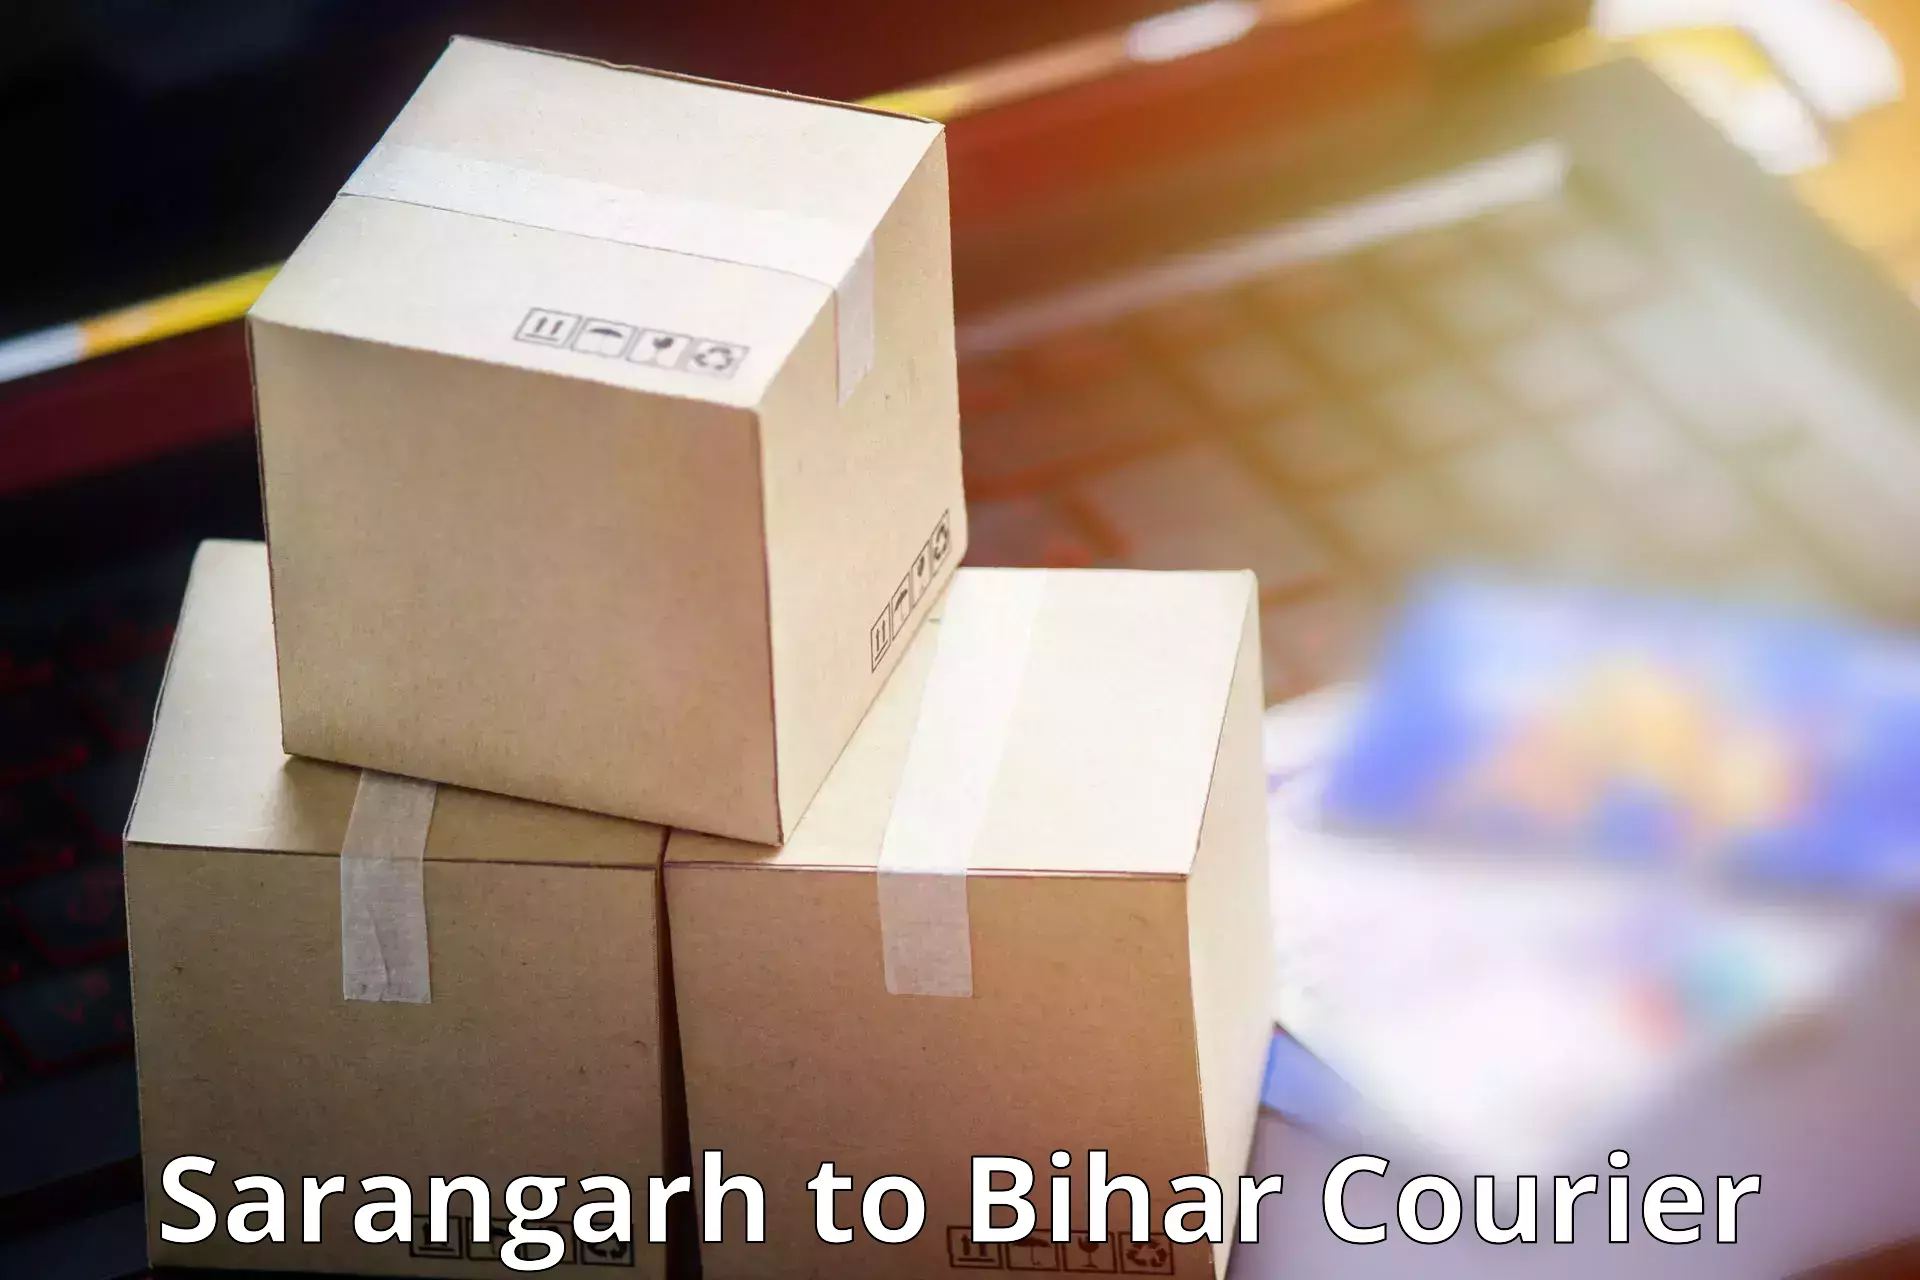 Multi-city courier Sarangarh to Barh